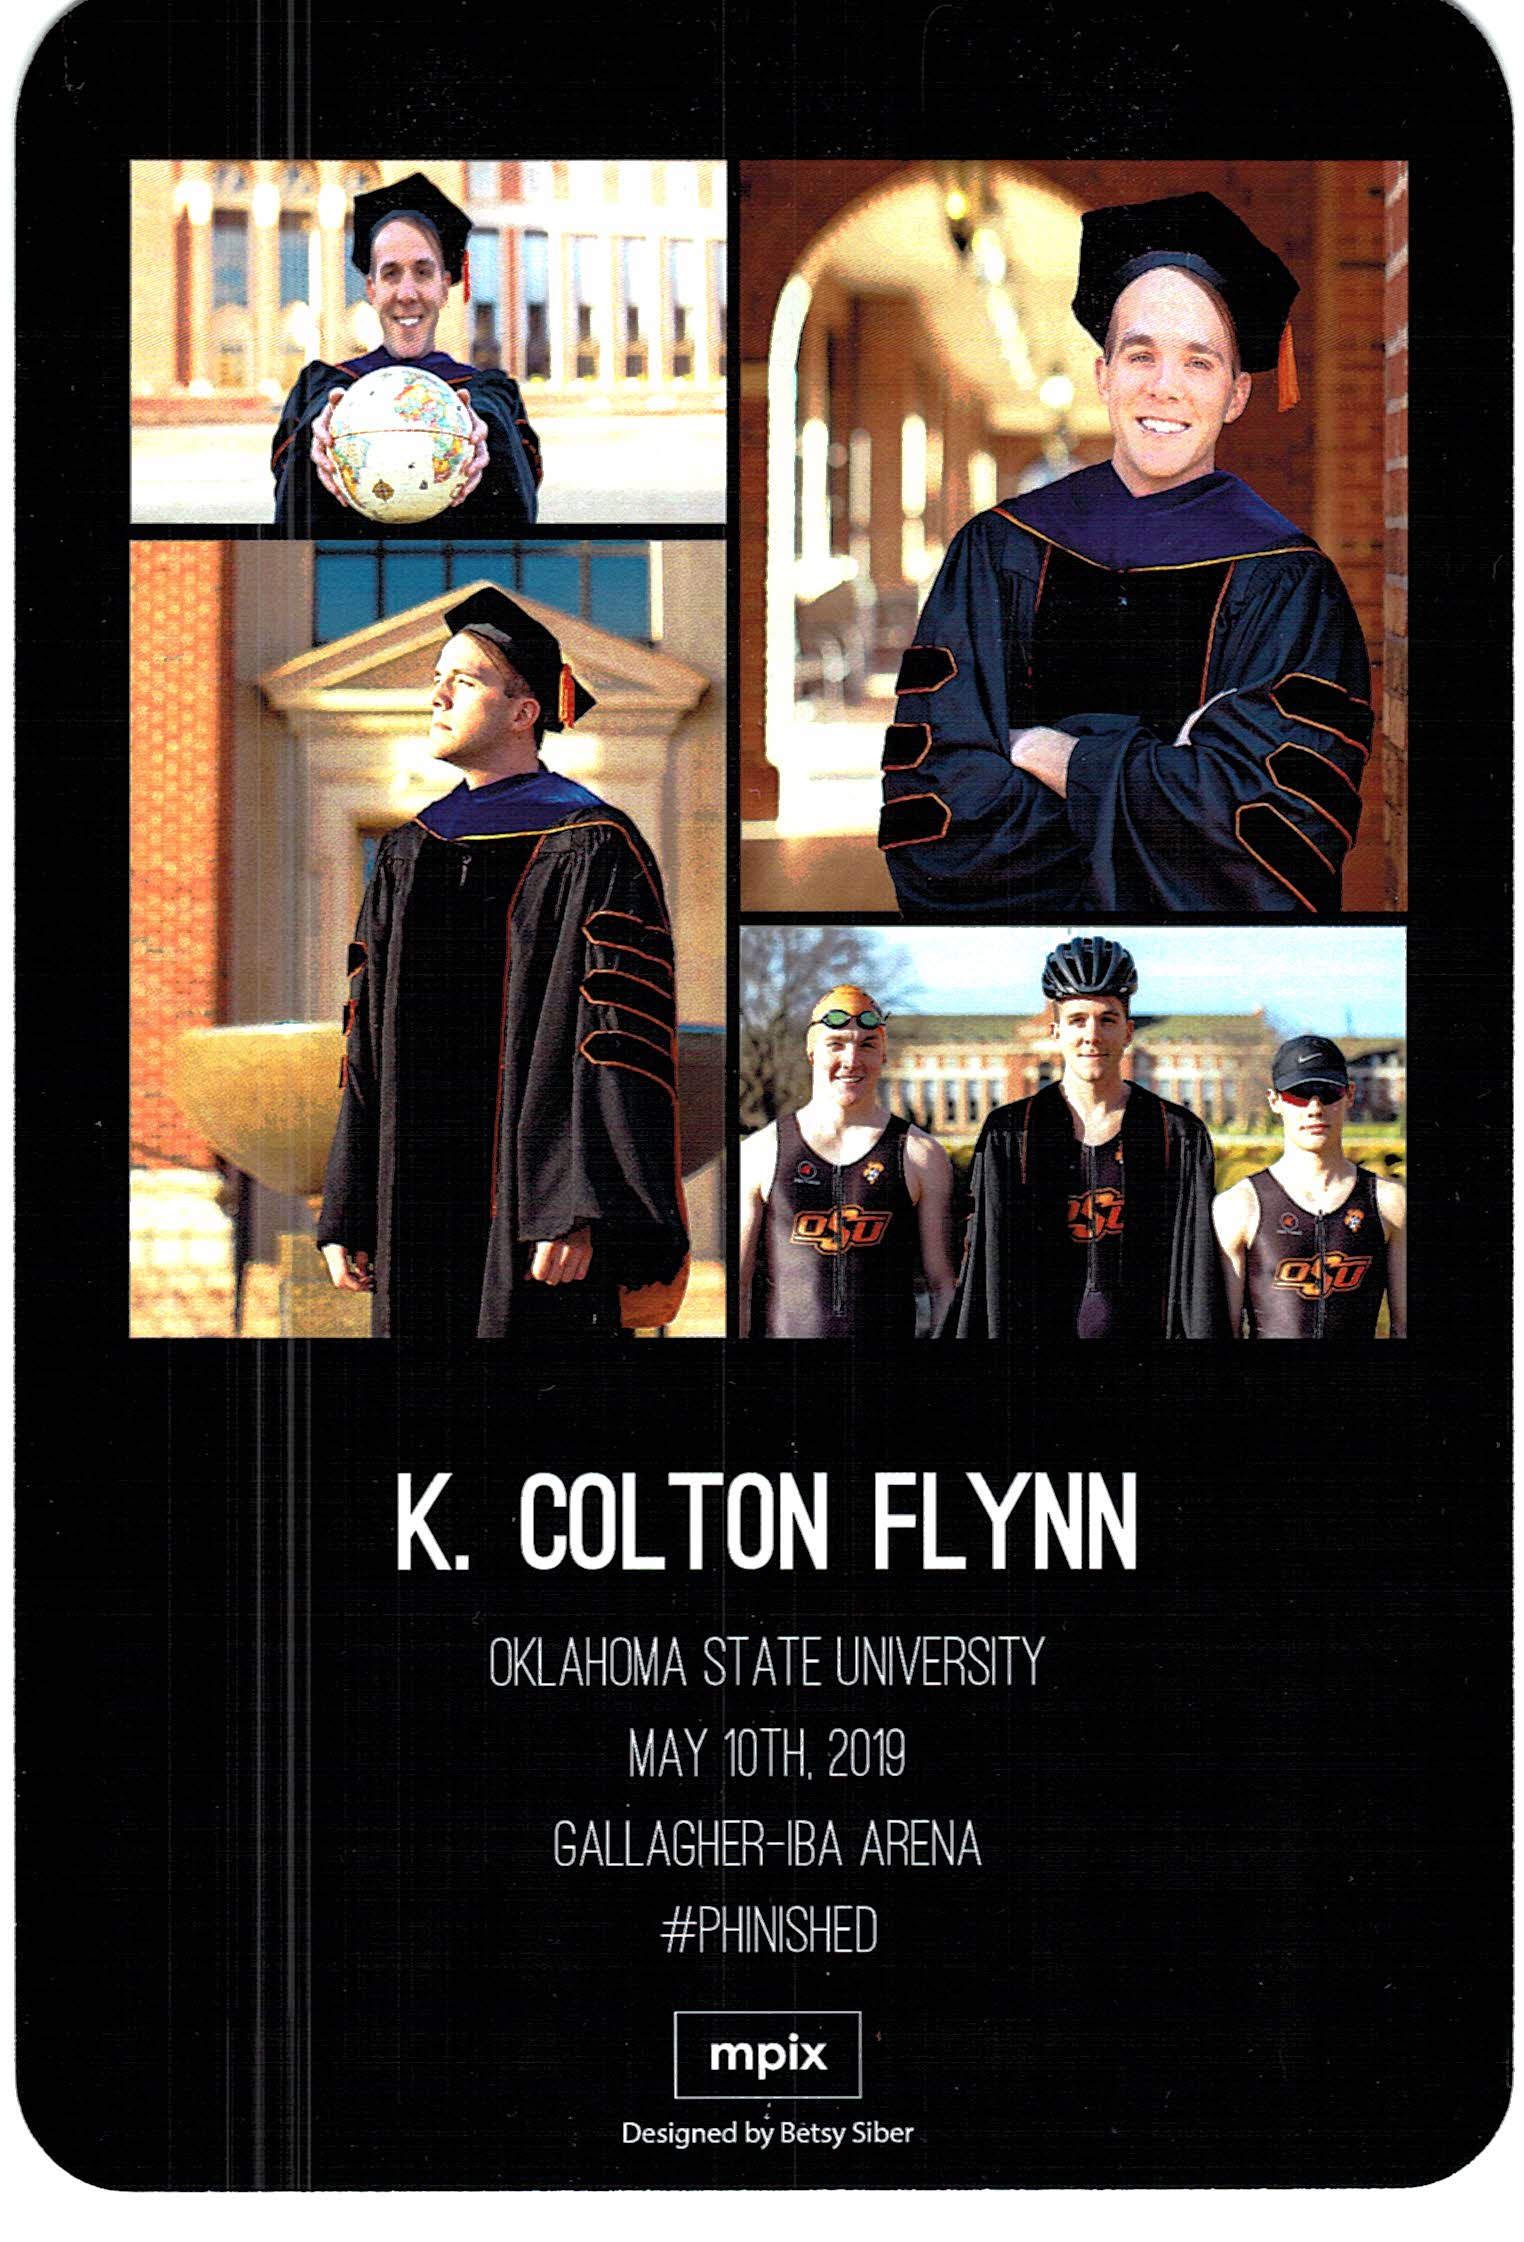 K. Colton Flynn's PhD Announcement